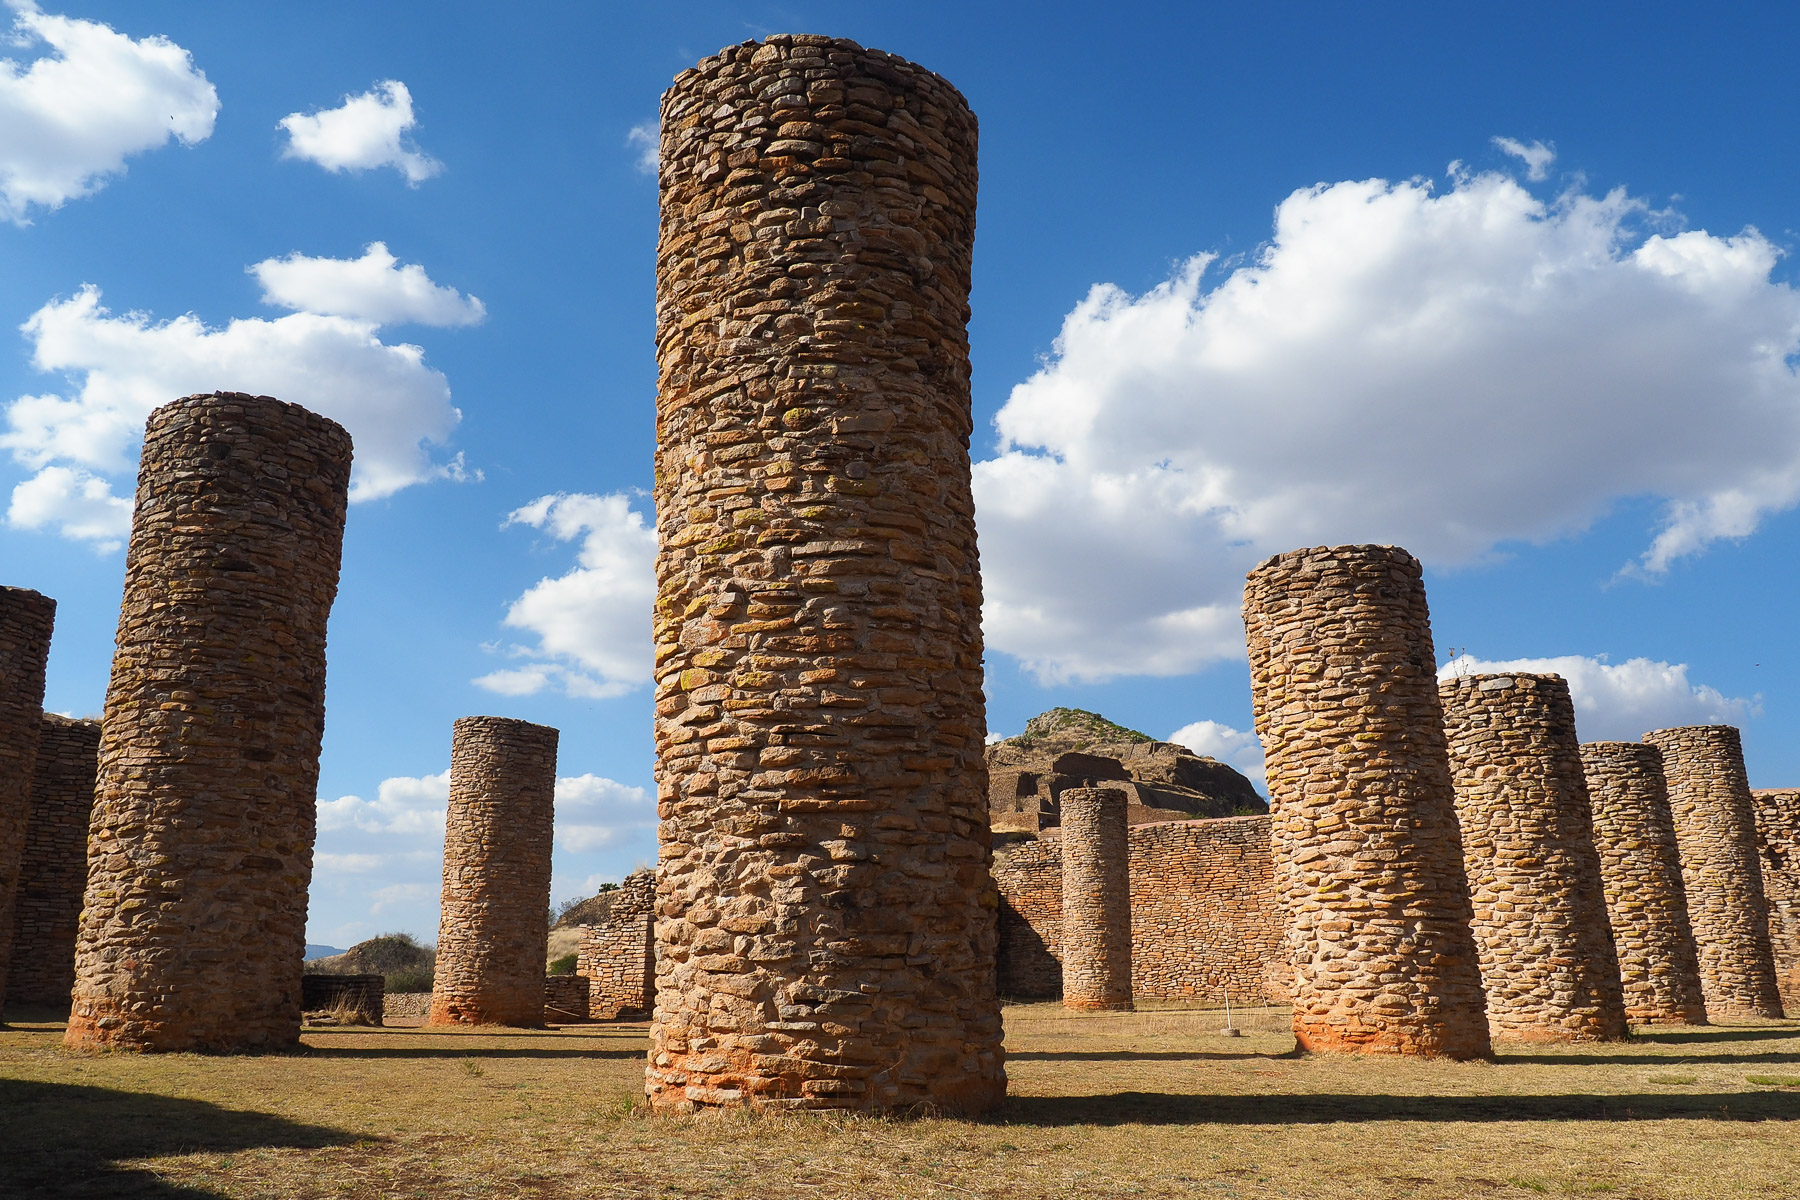 Beeindruckende Säulen, die einmal ein riesiges Dach getragen hatten, das ca. 750 n.C. durch Feuer zerstört wurde